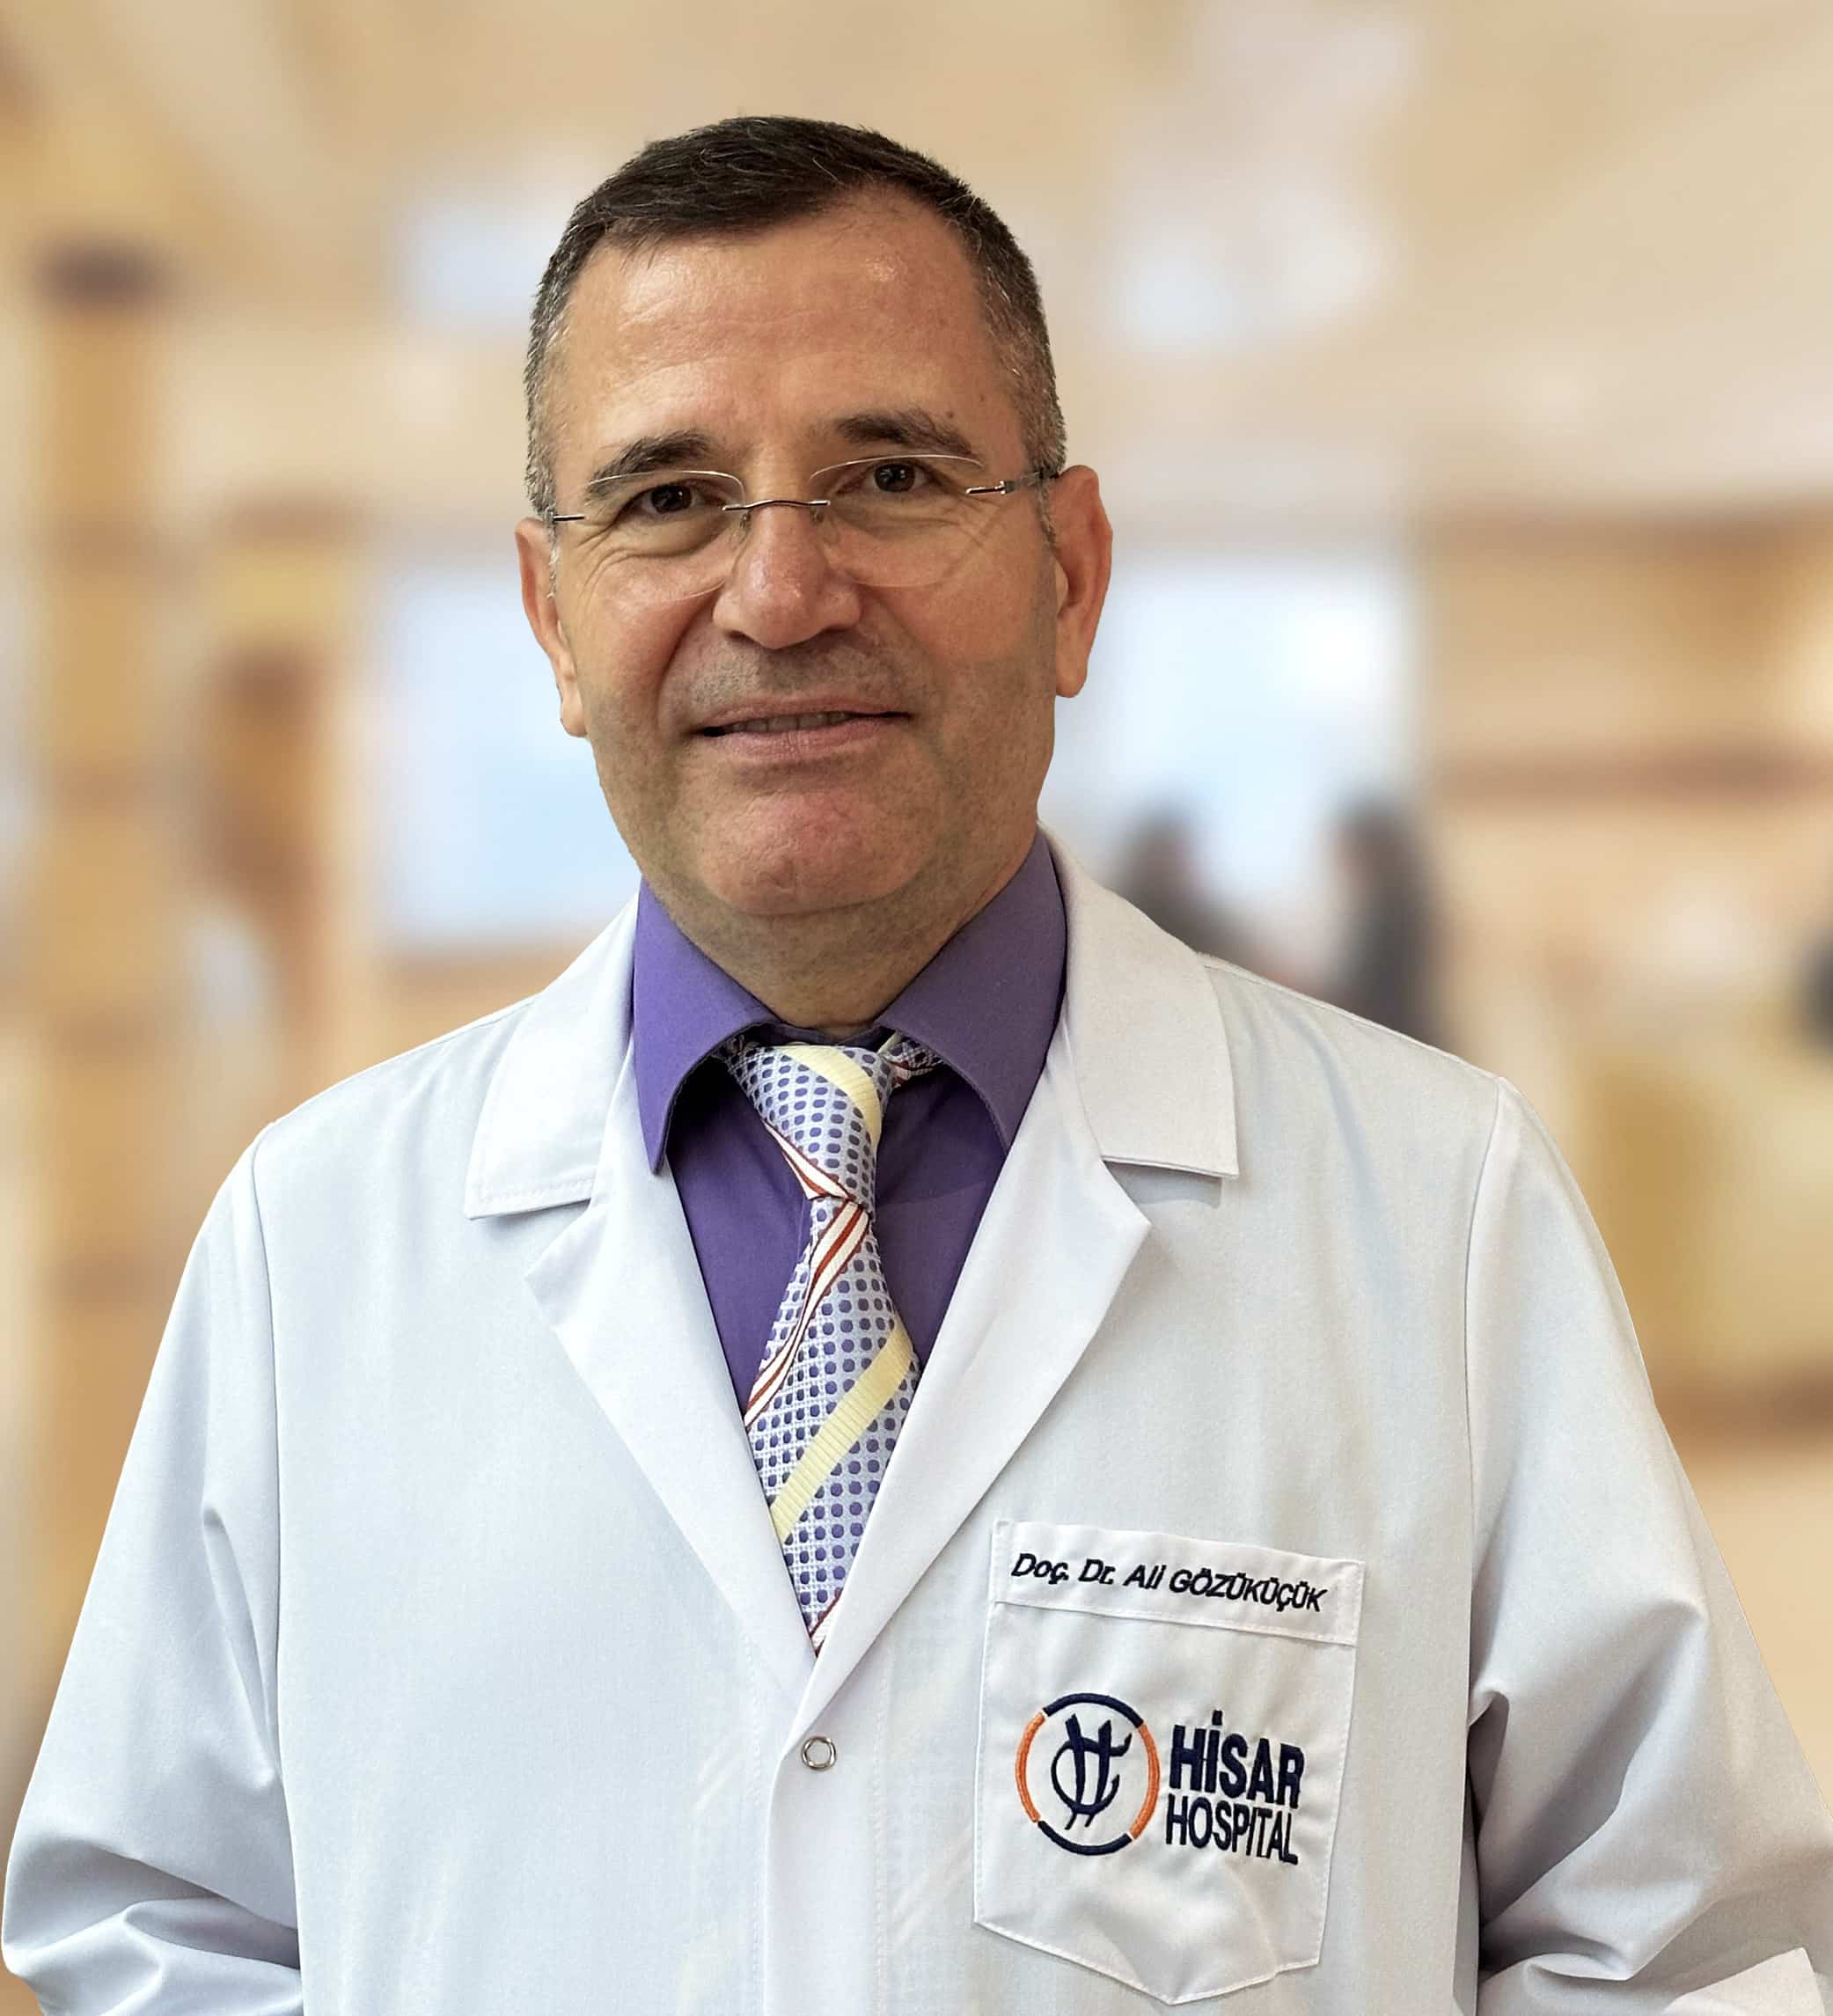 Doc Dr Ali Gozukucuk Cocuk Hastaliklari